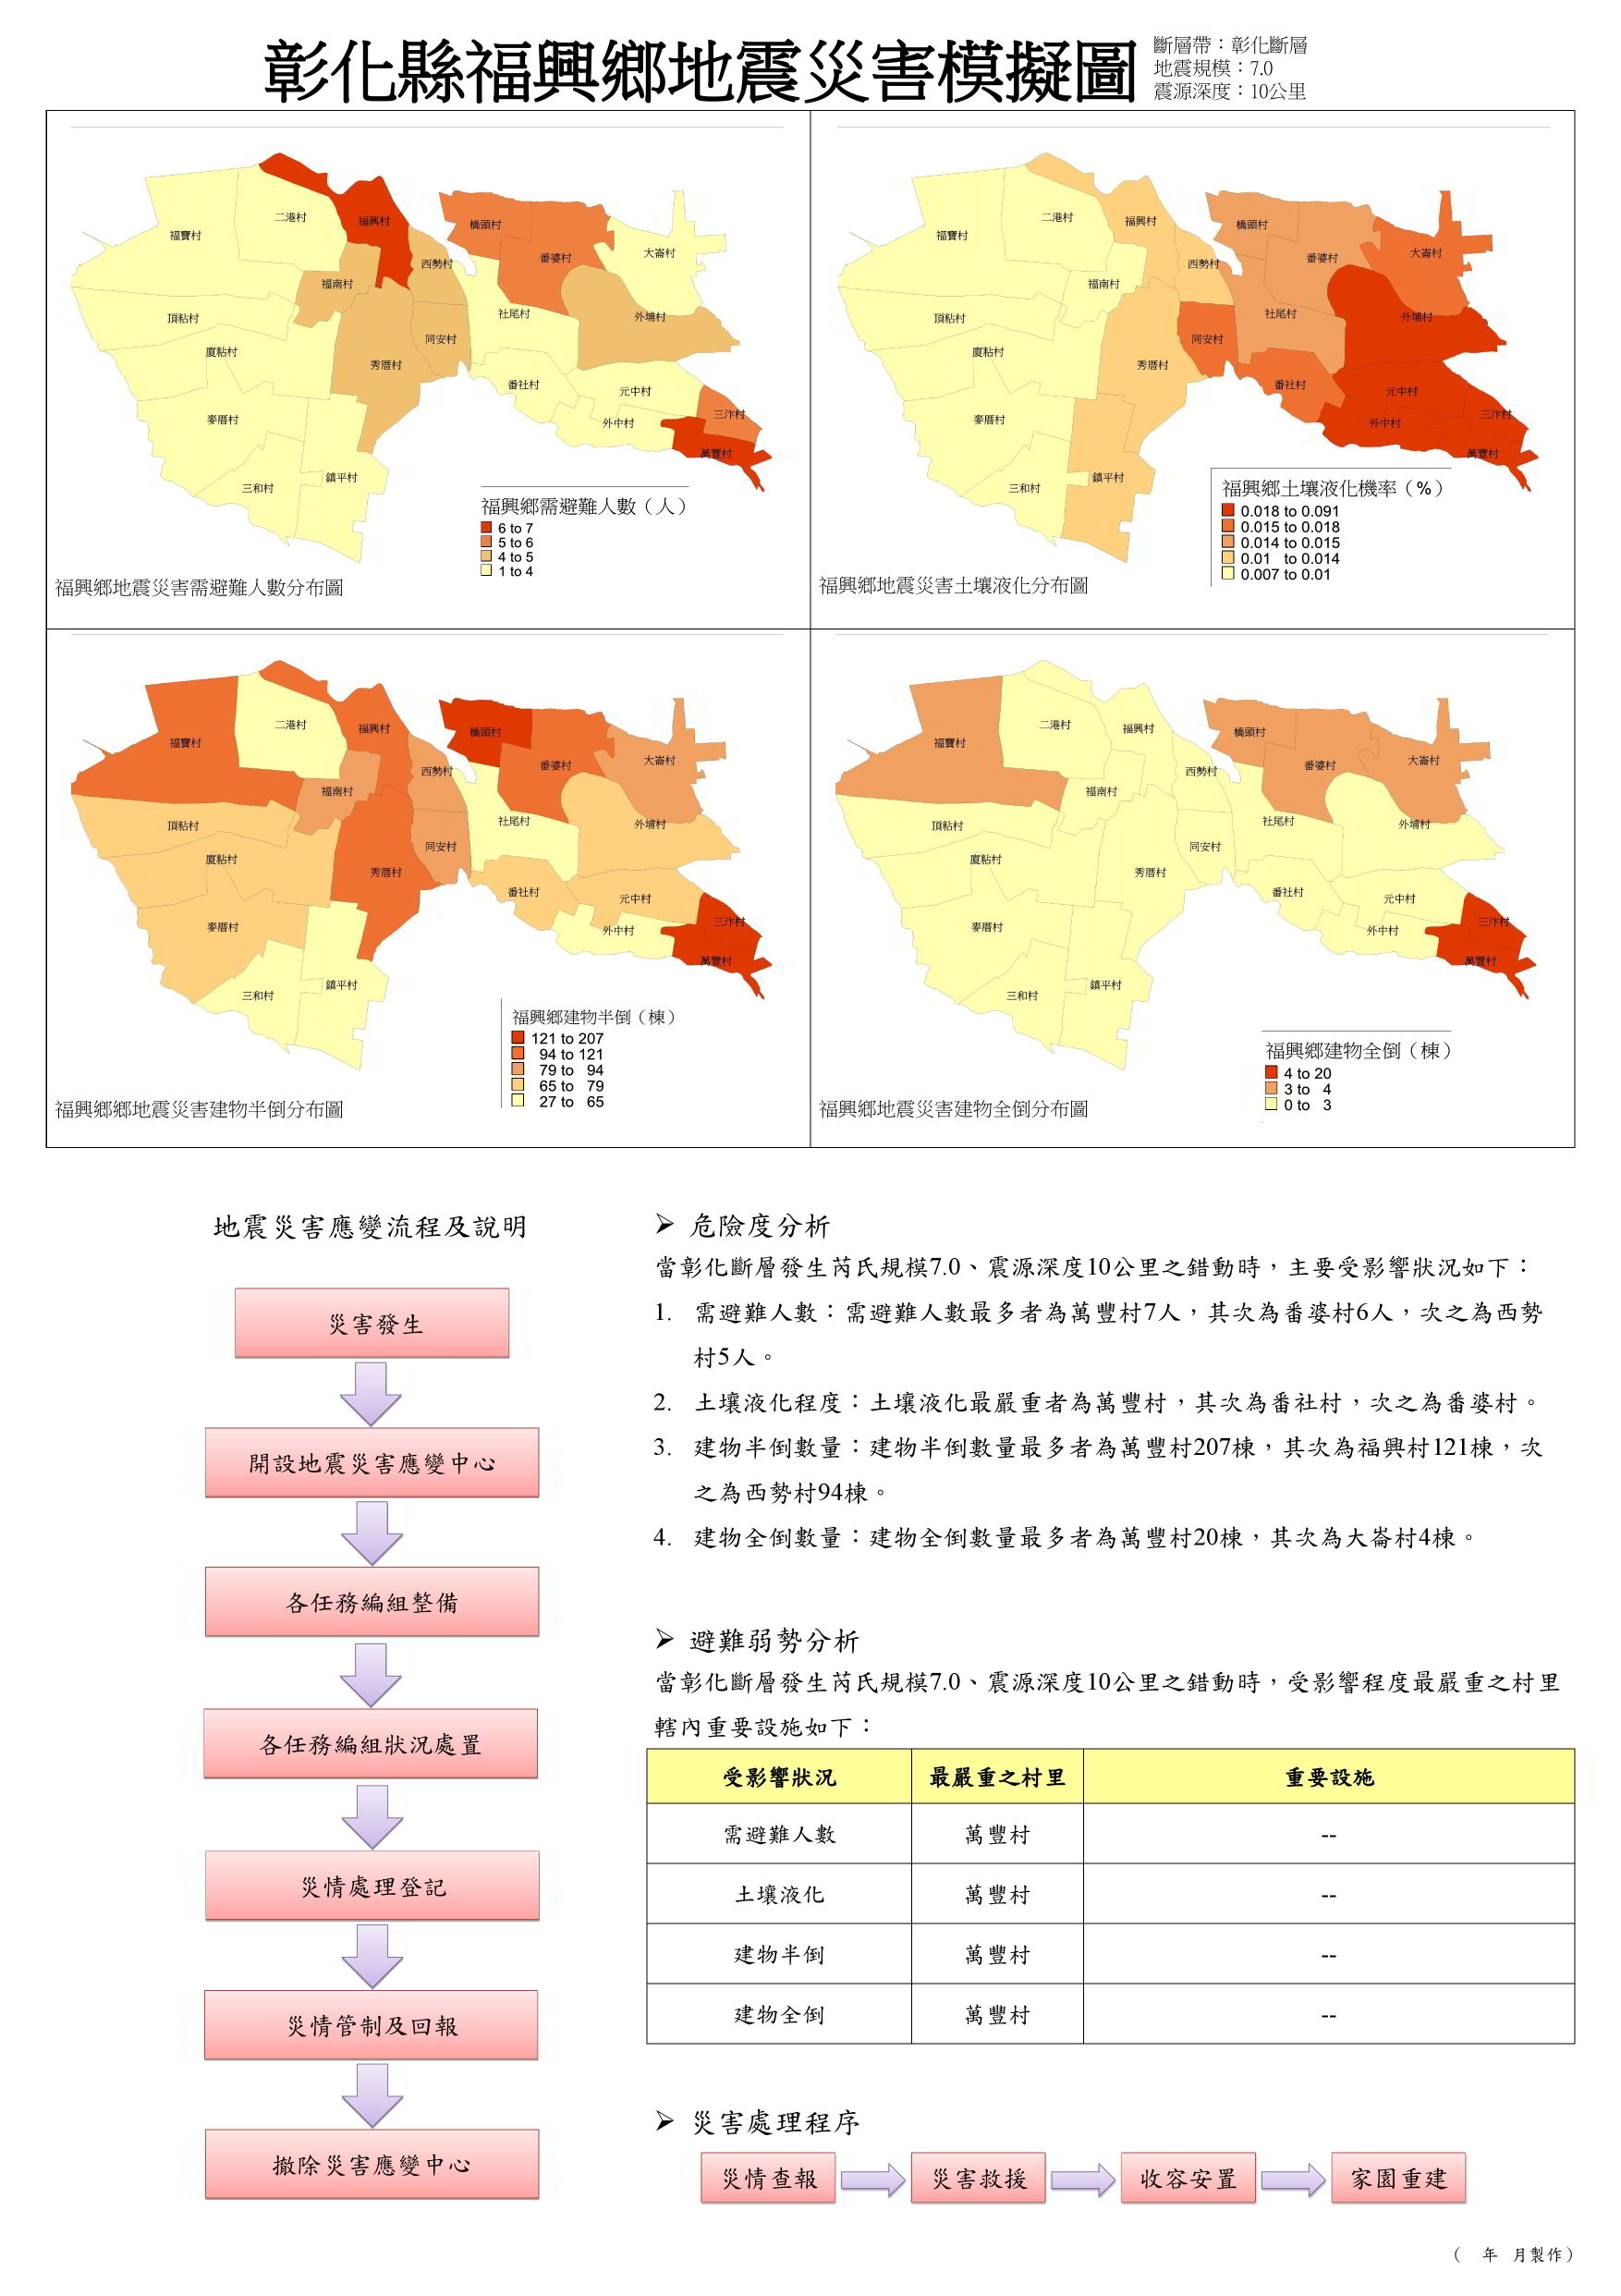 防災專區福興鄉地震災害模擬圖